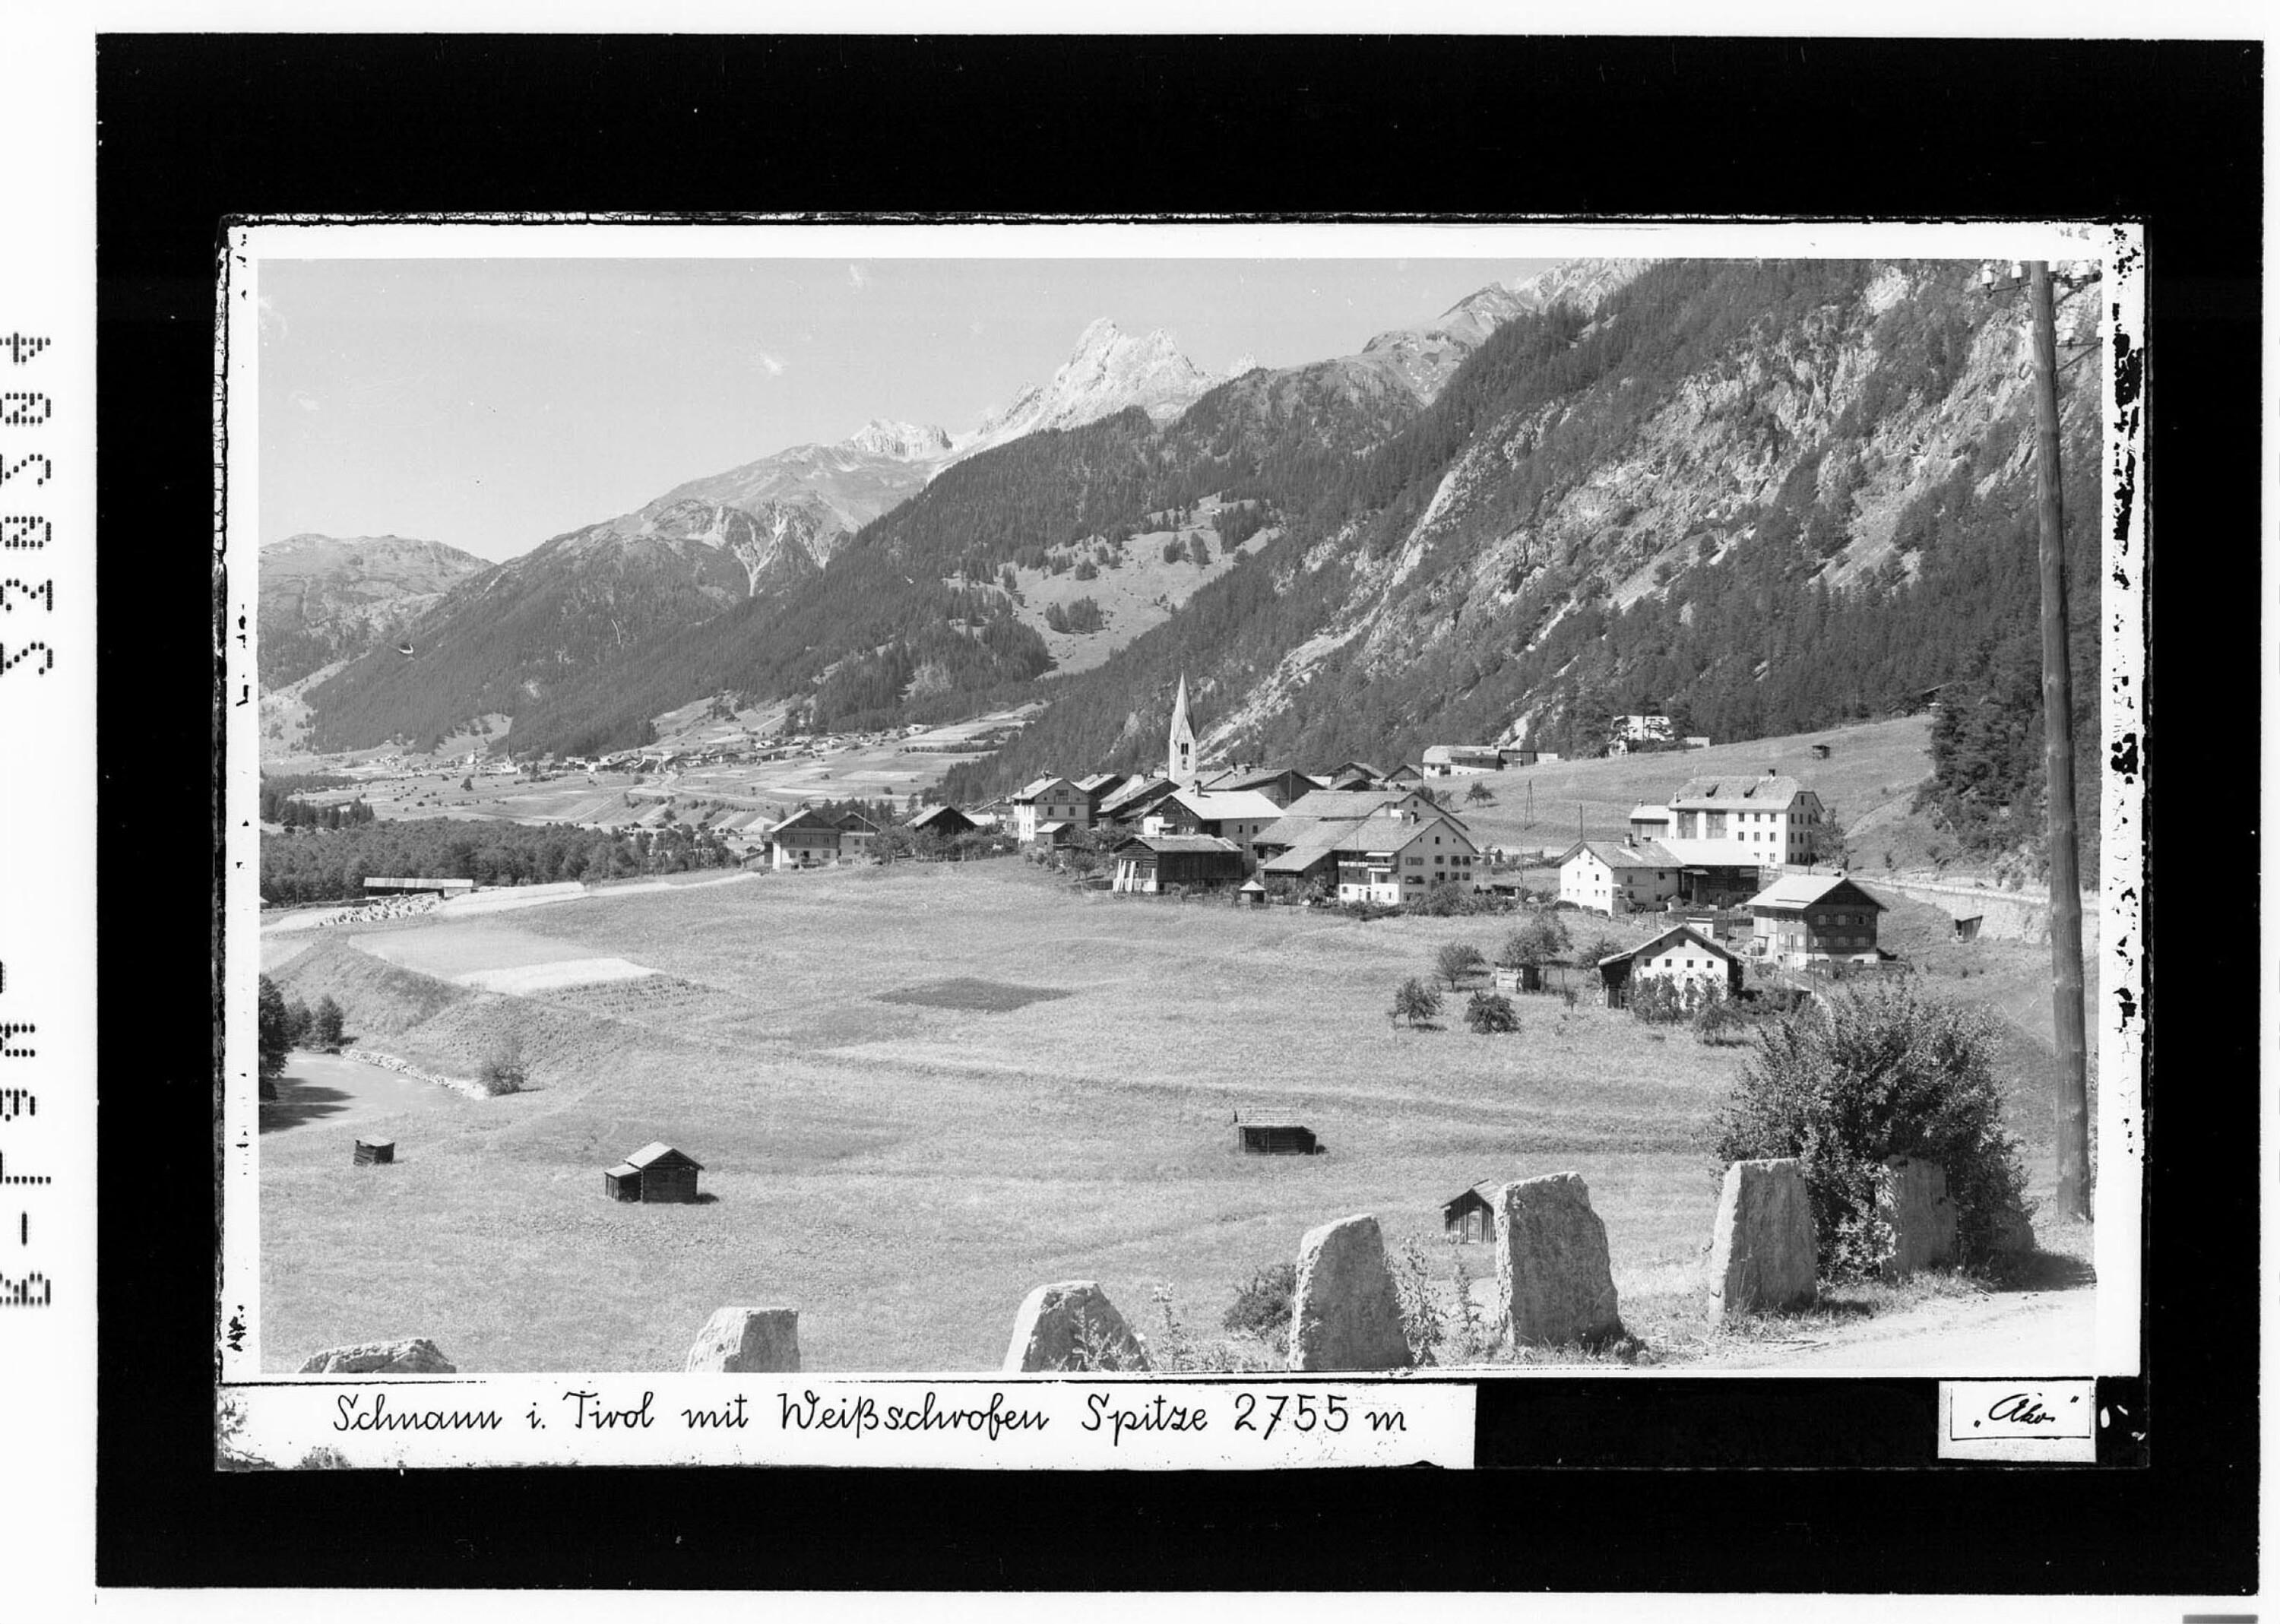 Schnann in Tirol mit Weißschrofen Spitze 2755 m></div>


    <hr>
    <div class=